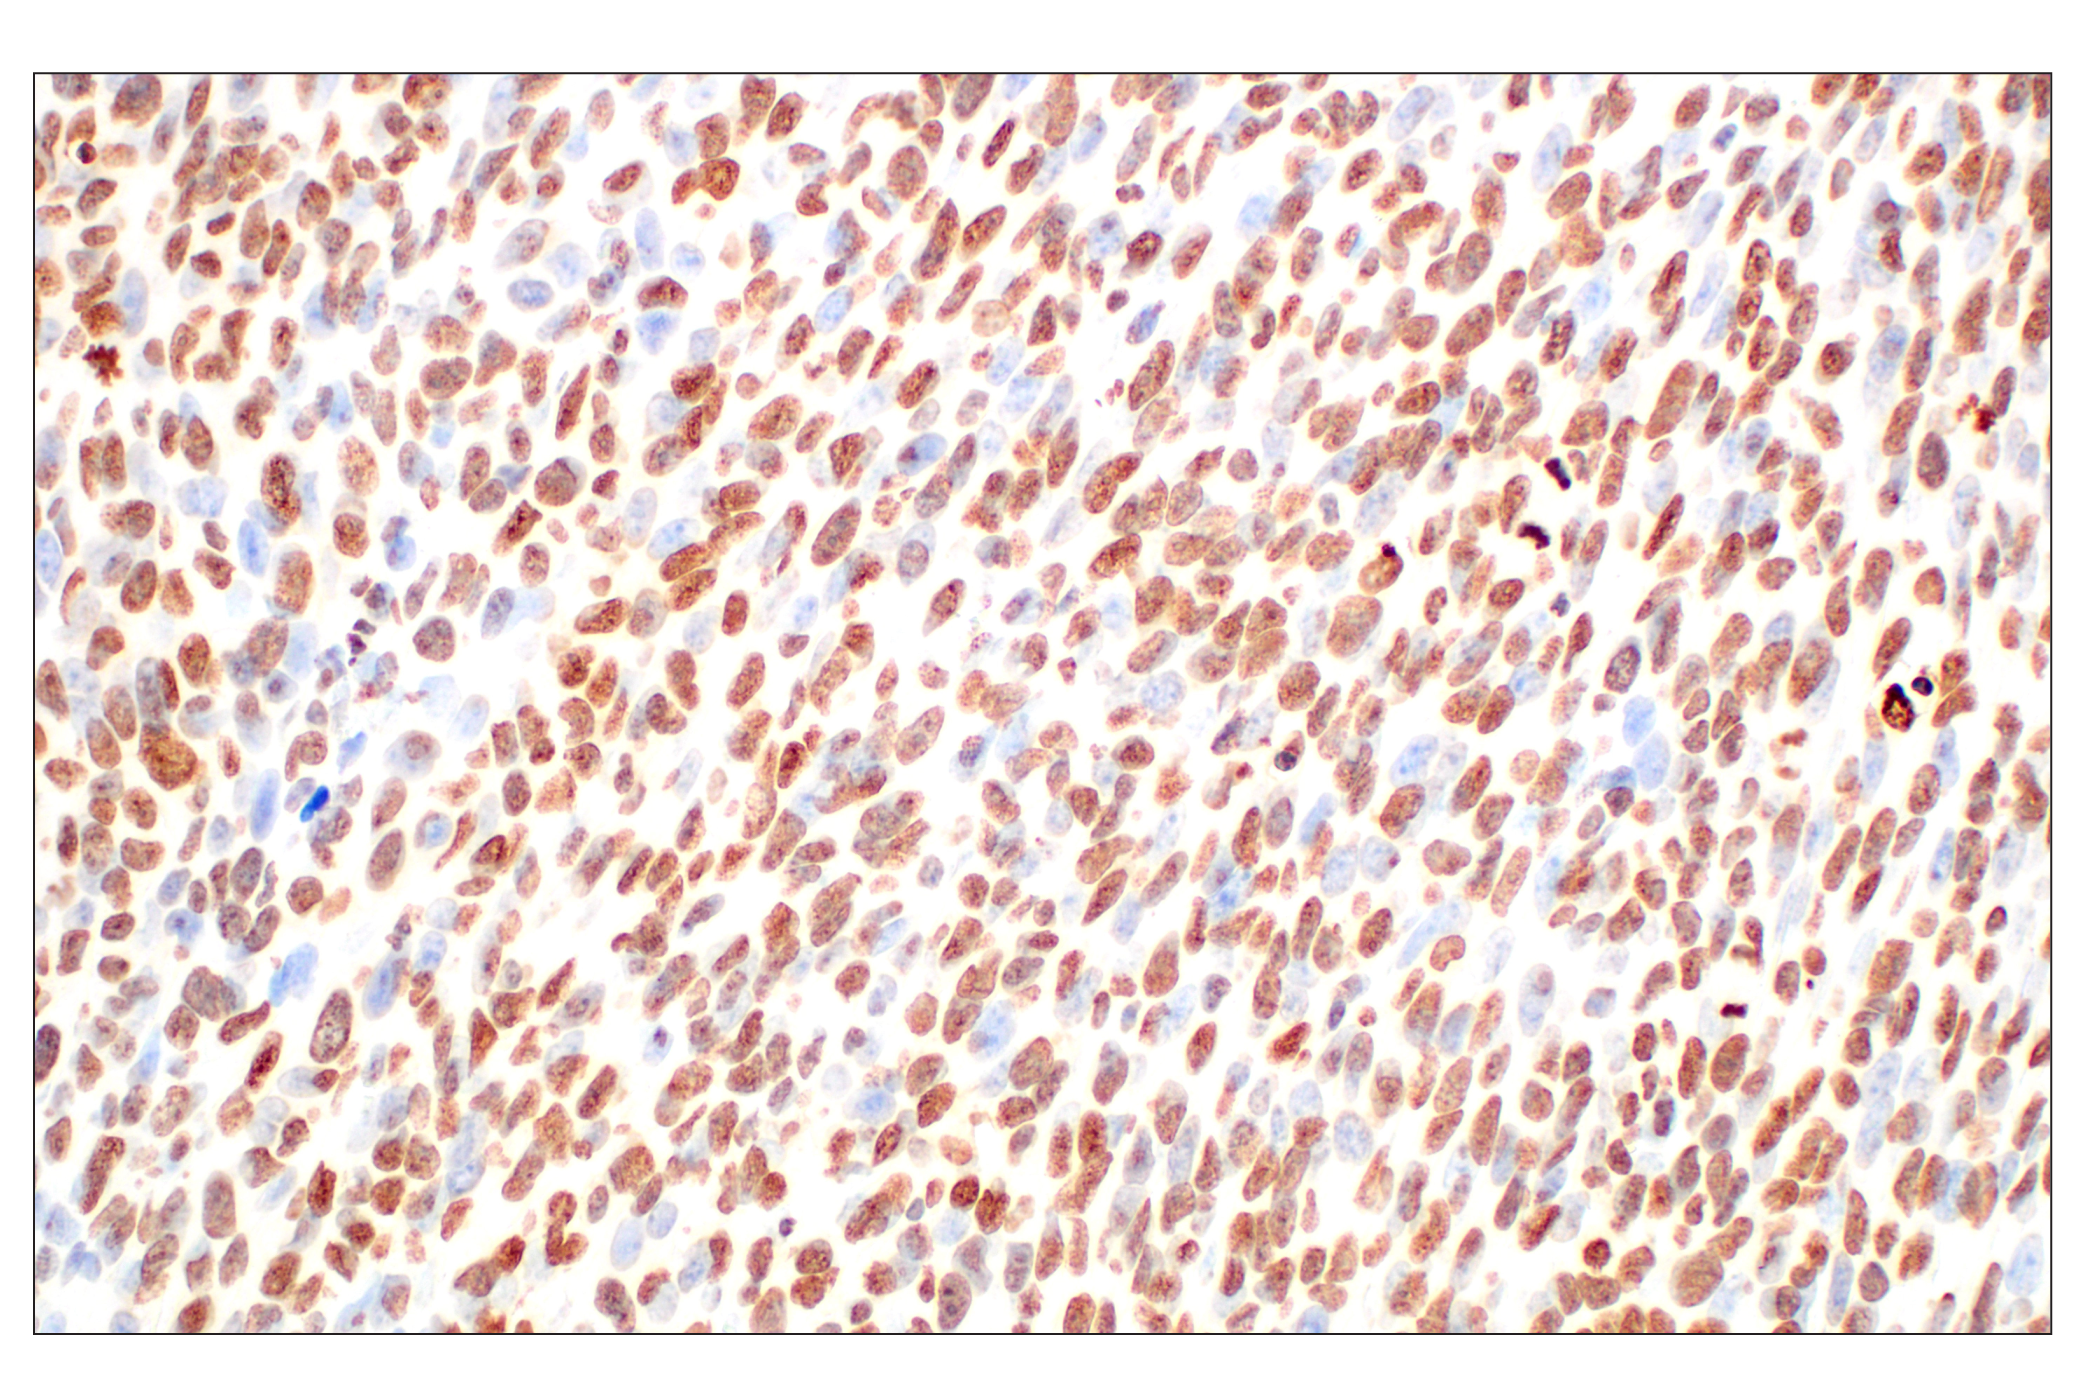  Image 13: Cell Fractionation Antibody Sampler Kit